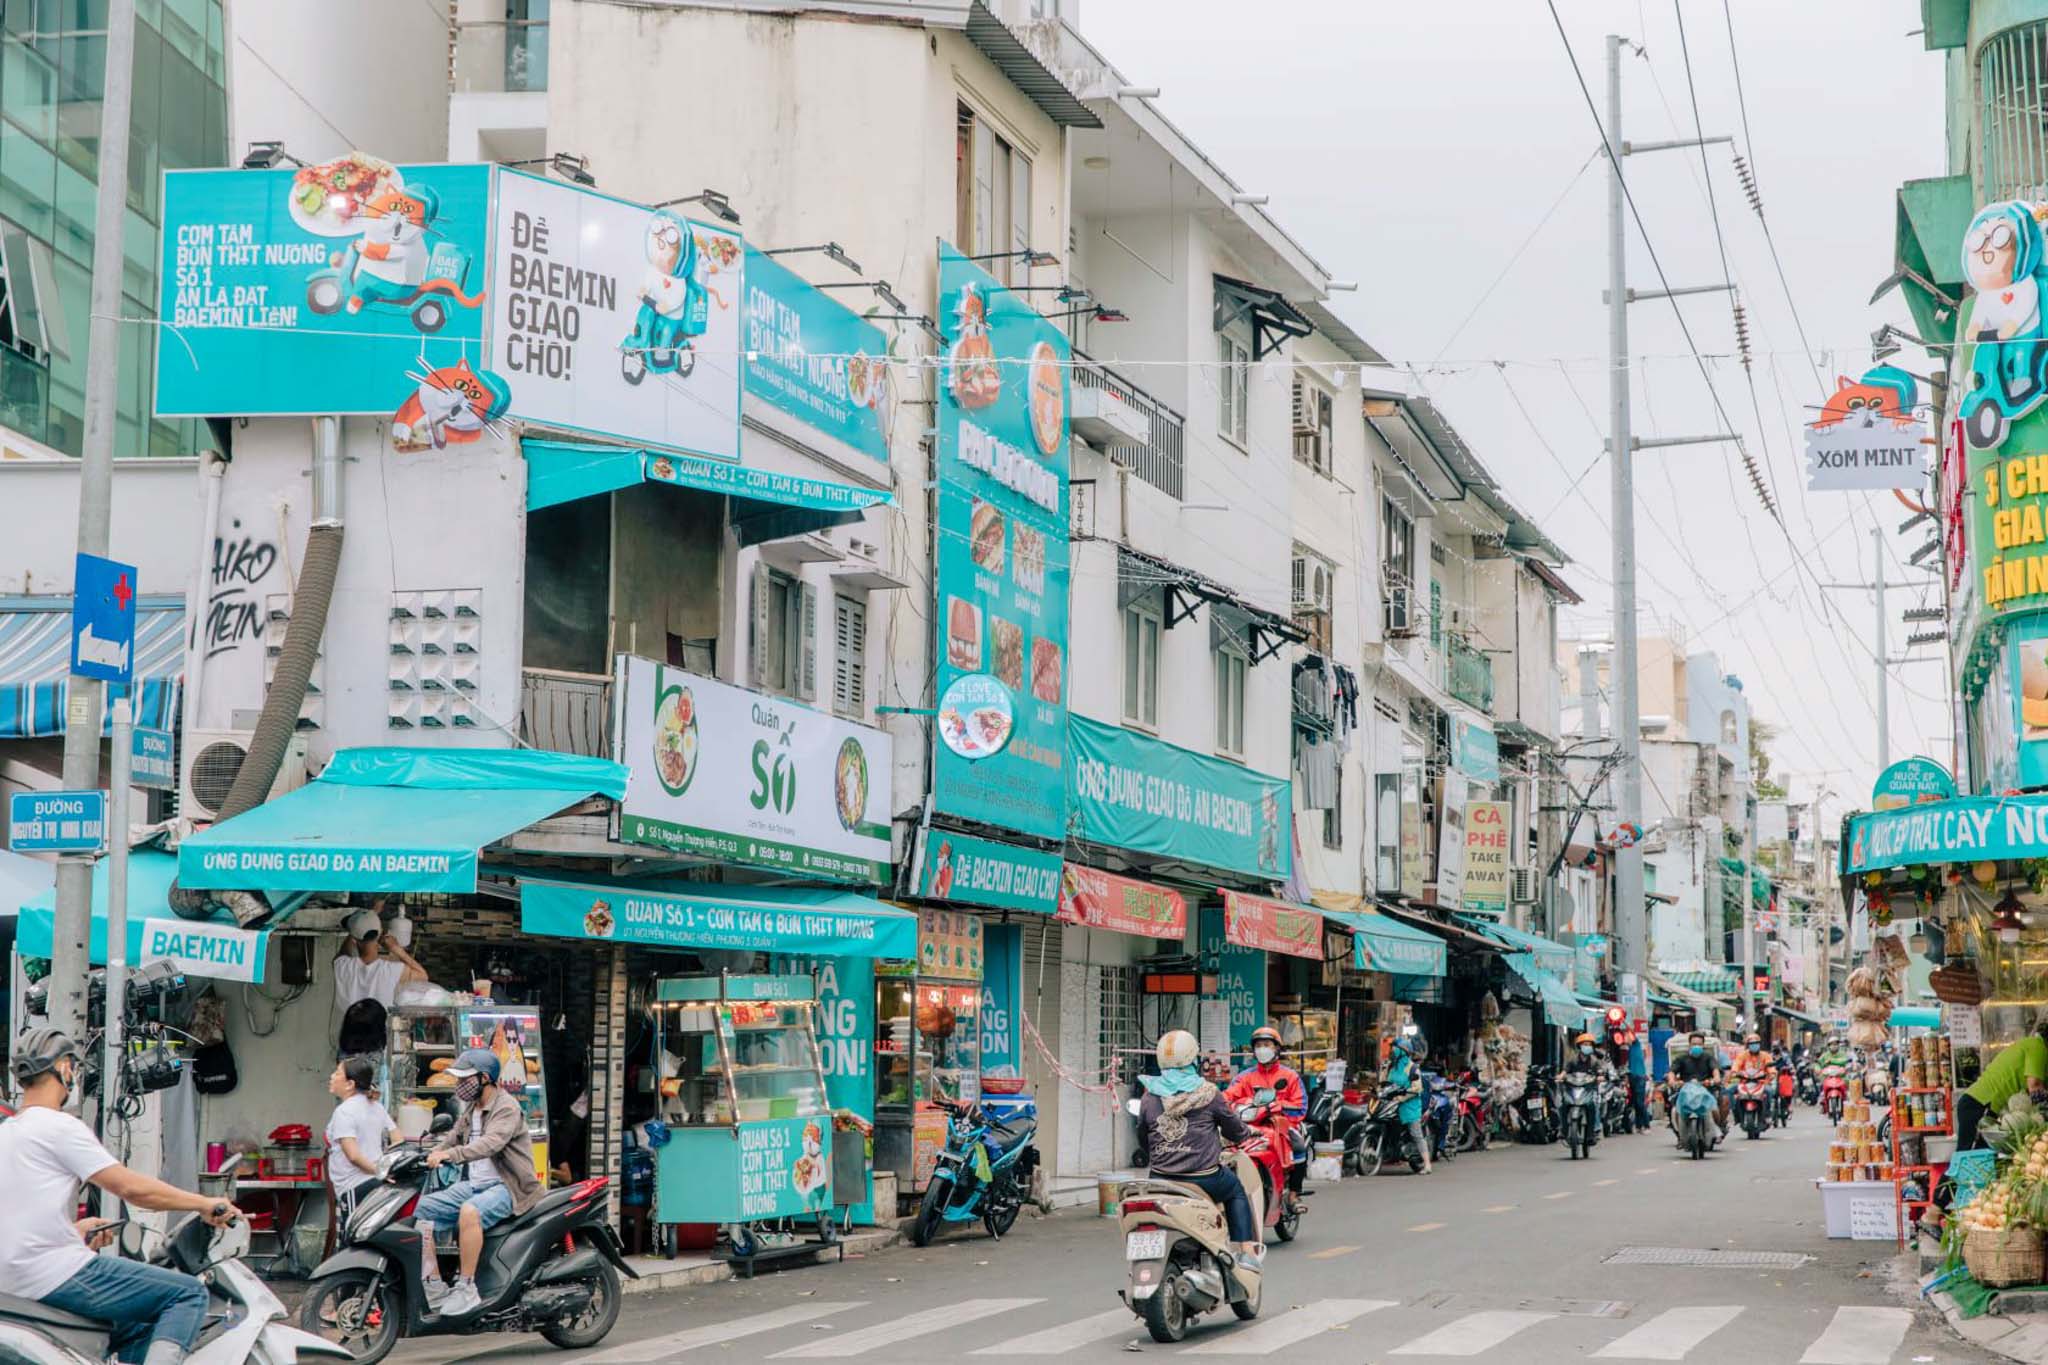 Cùng BAEMIN nhìn lại hành trình chinh phục người dùng Việt Nam